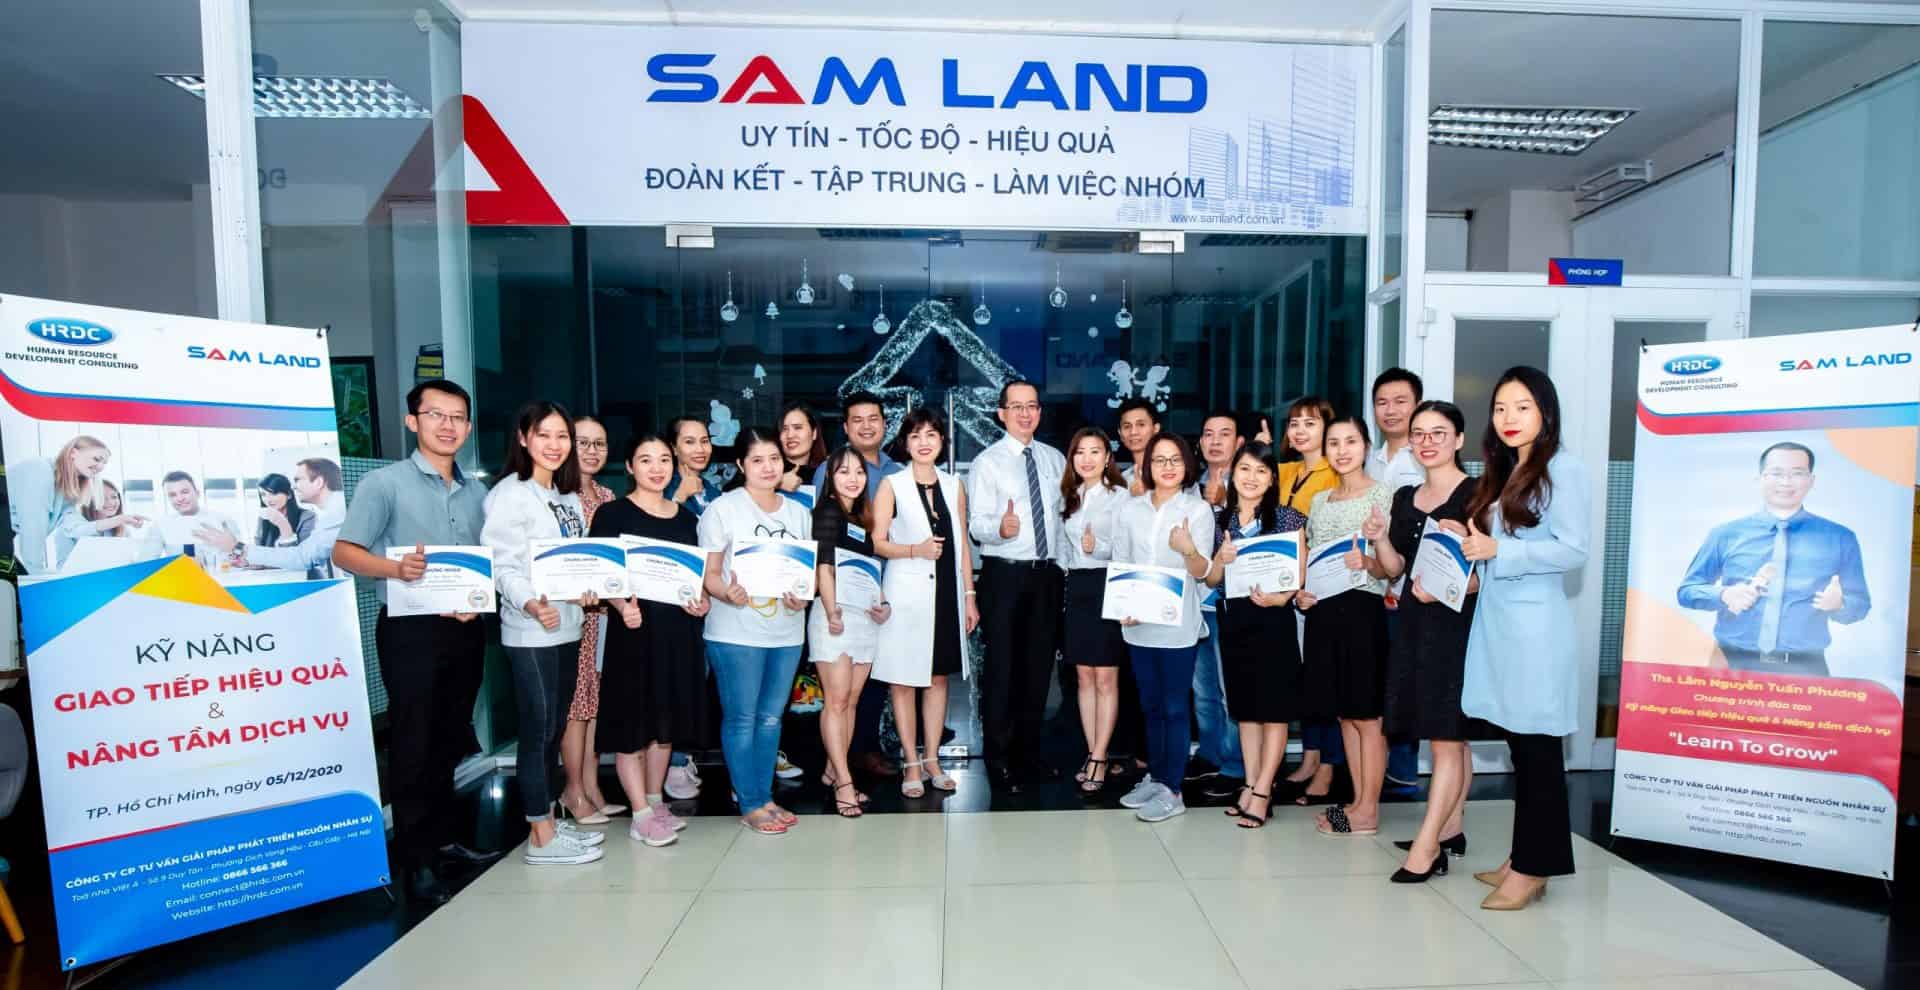 Khóa học Kỹ năng giao tiếp hiệu quả và Nâng tầm dịch vụ khách hàng với Công ty SAMLAND